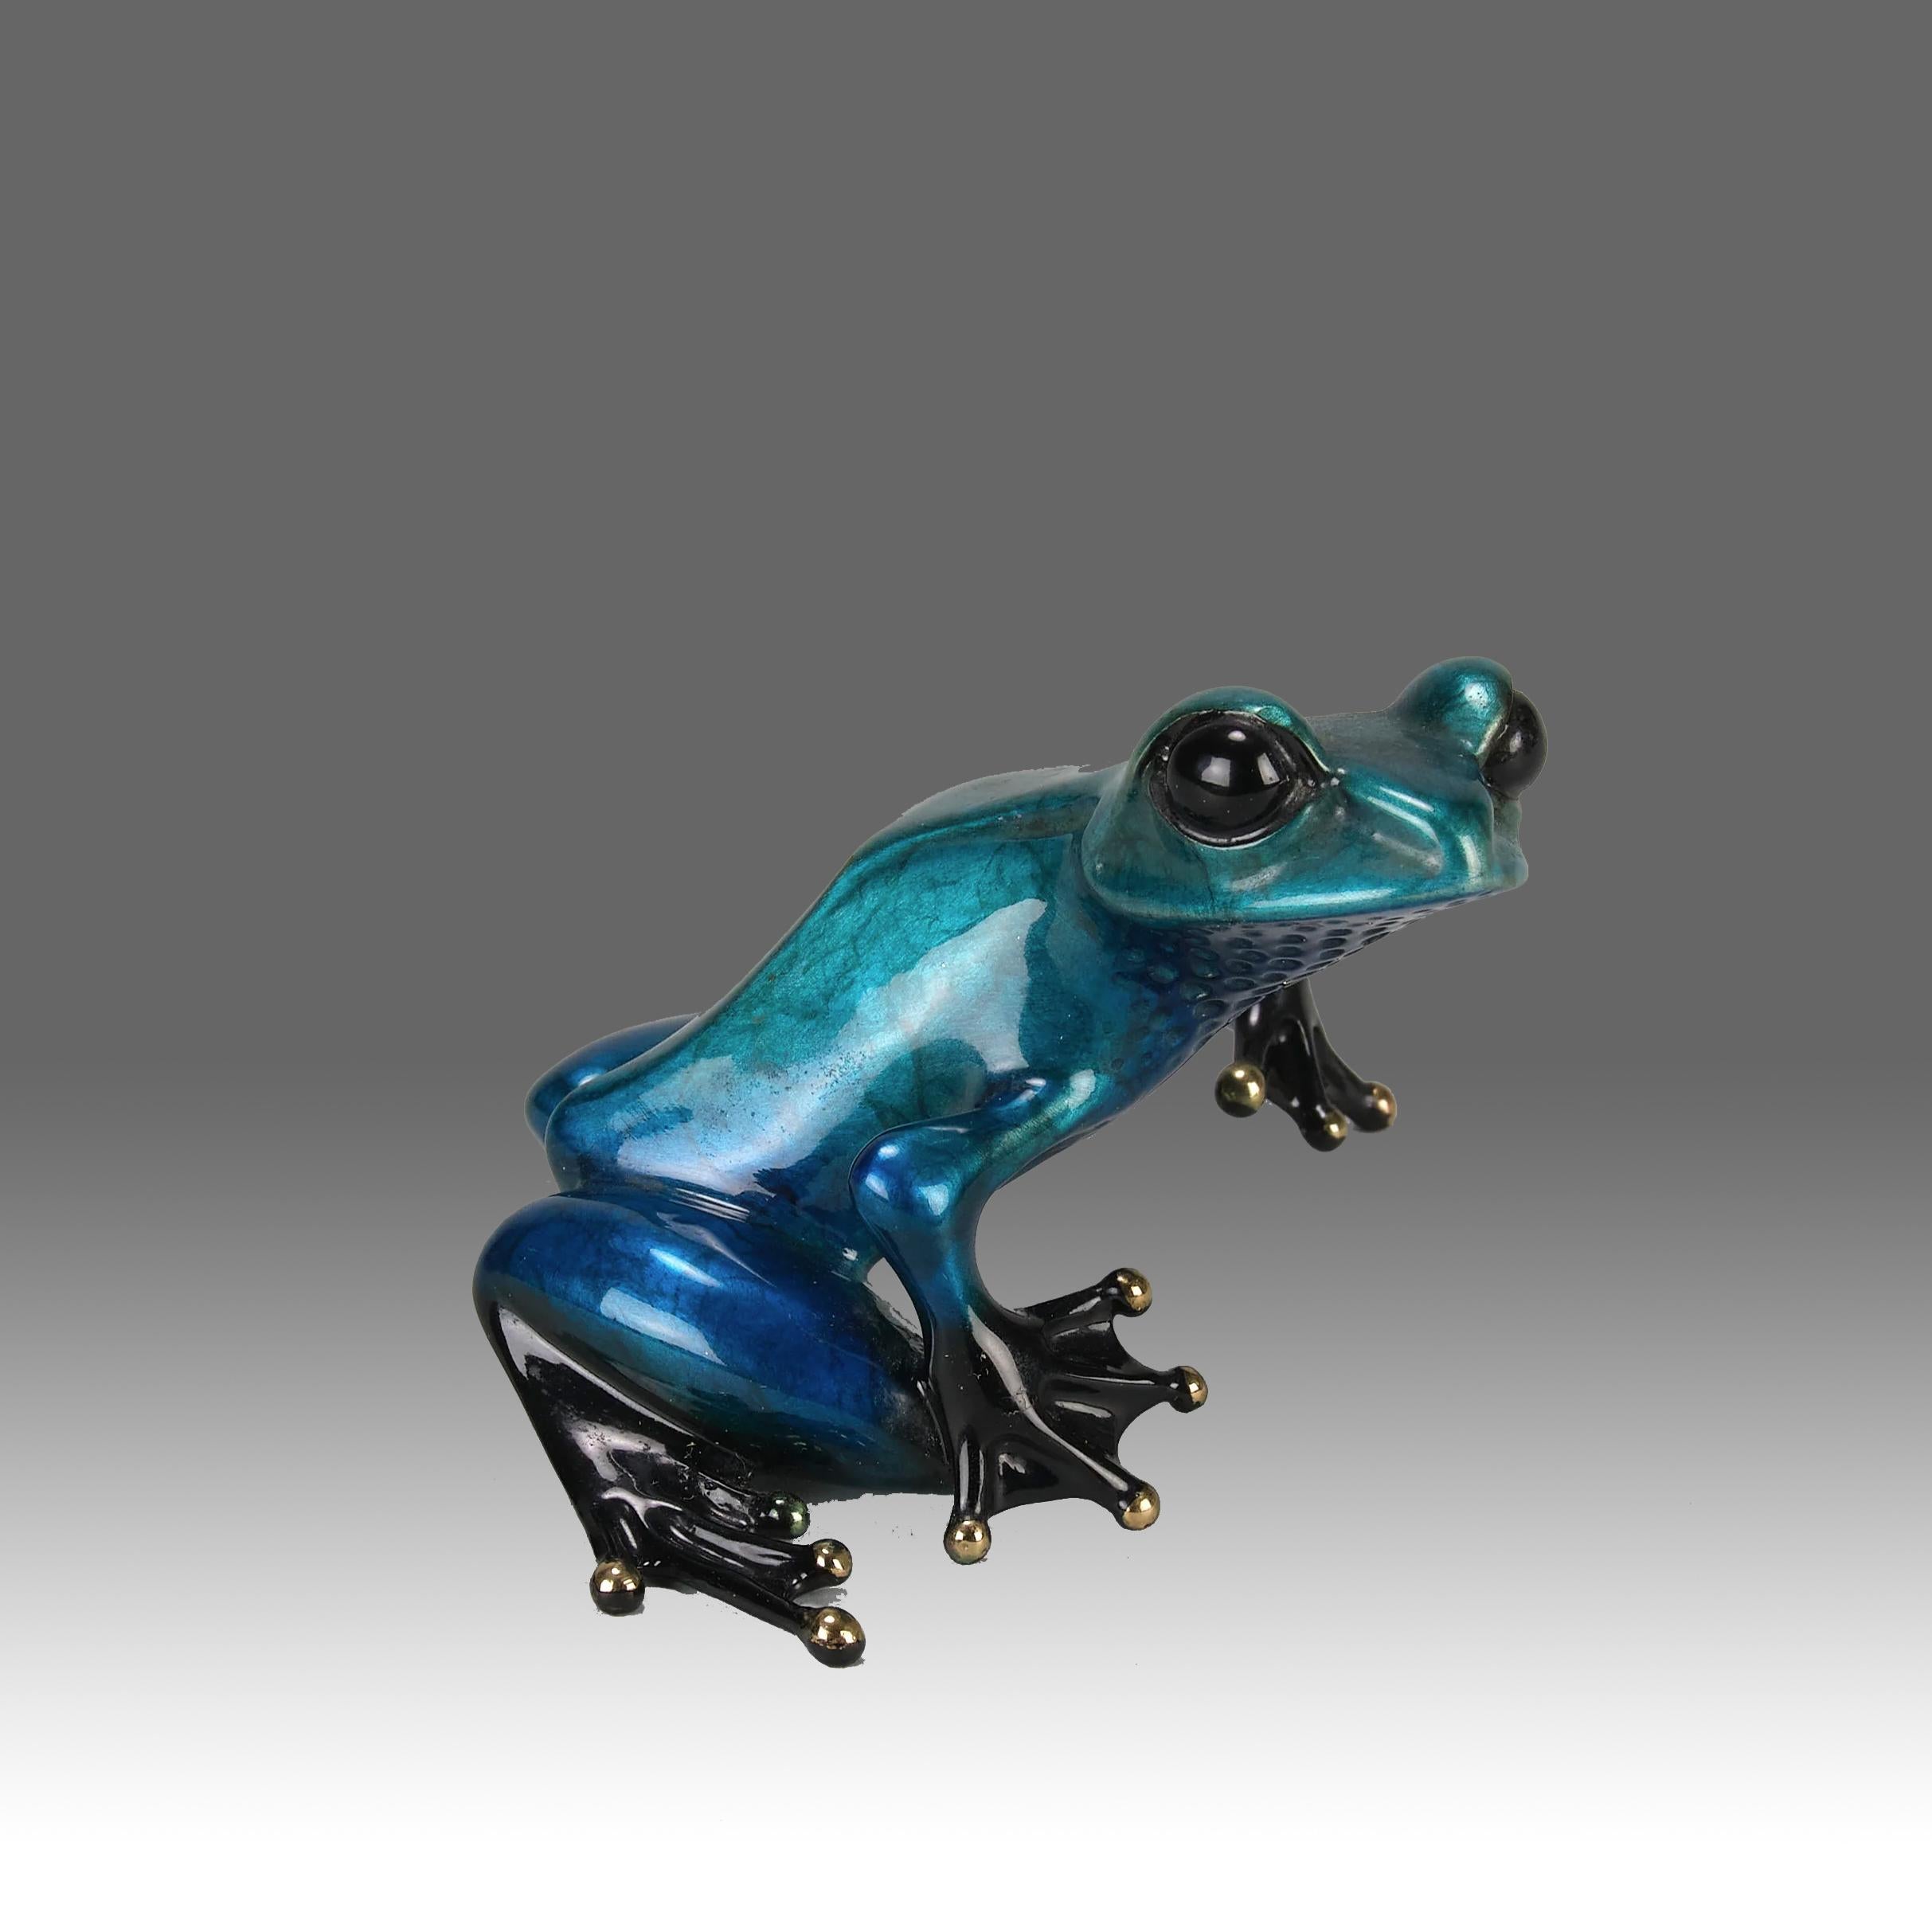 Une belle étude en bronze en édition limitée représentant une grenouille en métal bleu panaché en position assise, la tête relevée, présentant de très belles couleurs d'émail et une excellente surface tactile, signée Tim, estampillée 